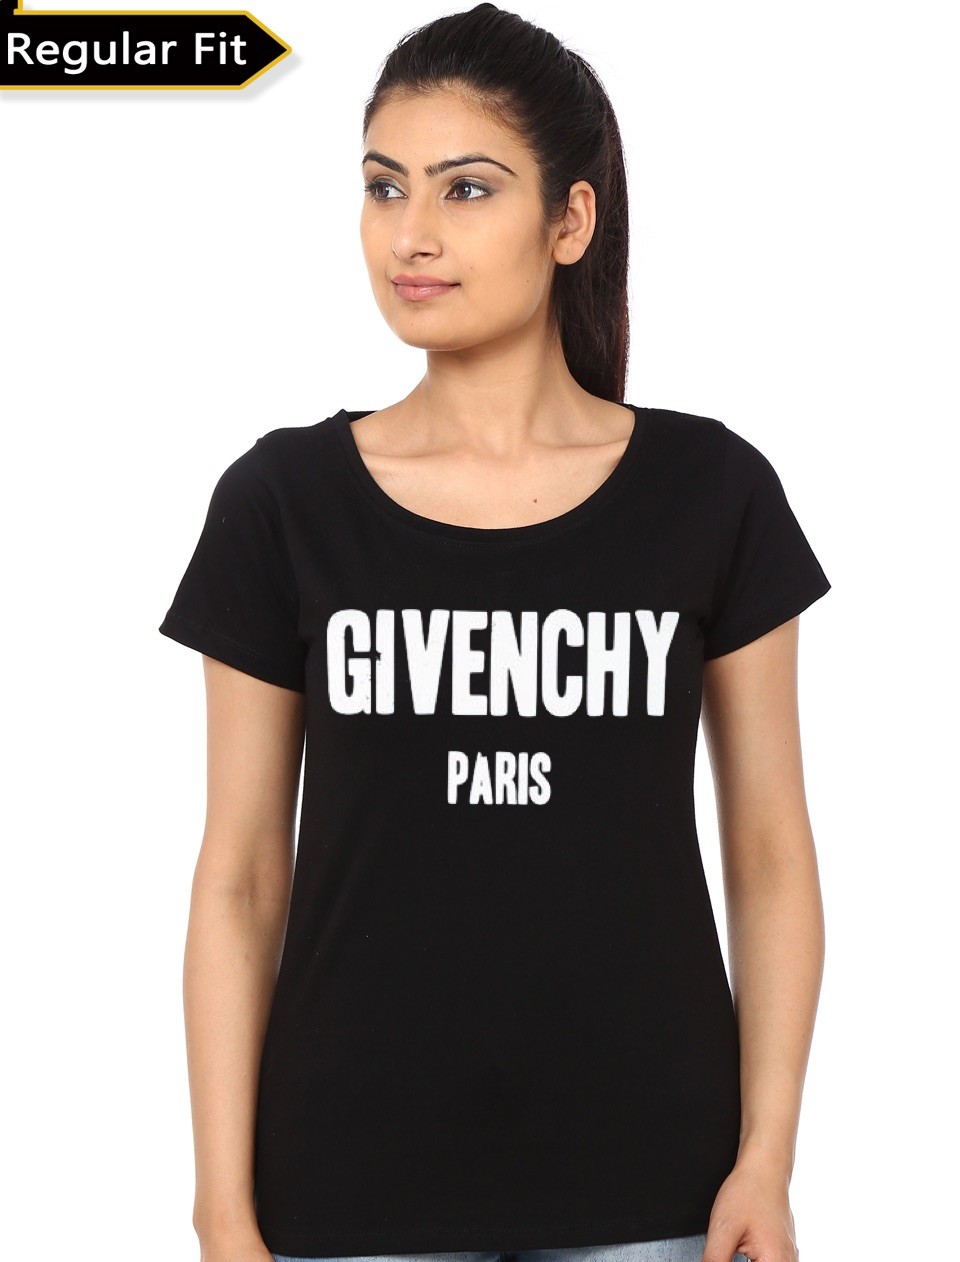 givenchy shirts india